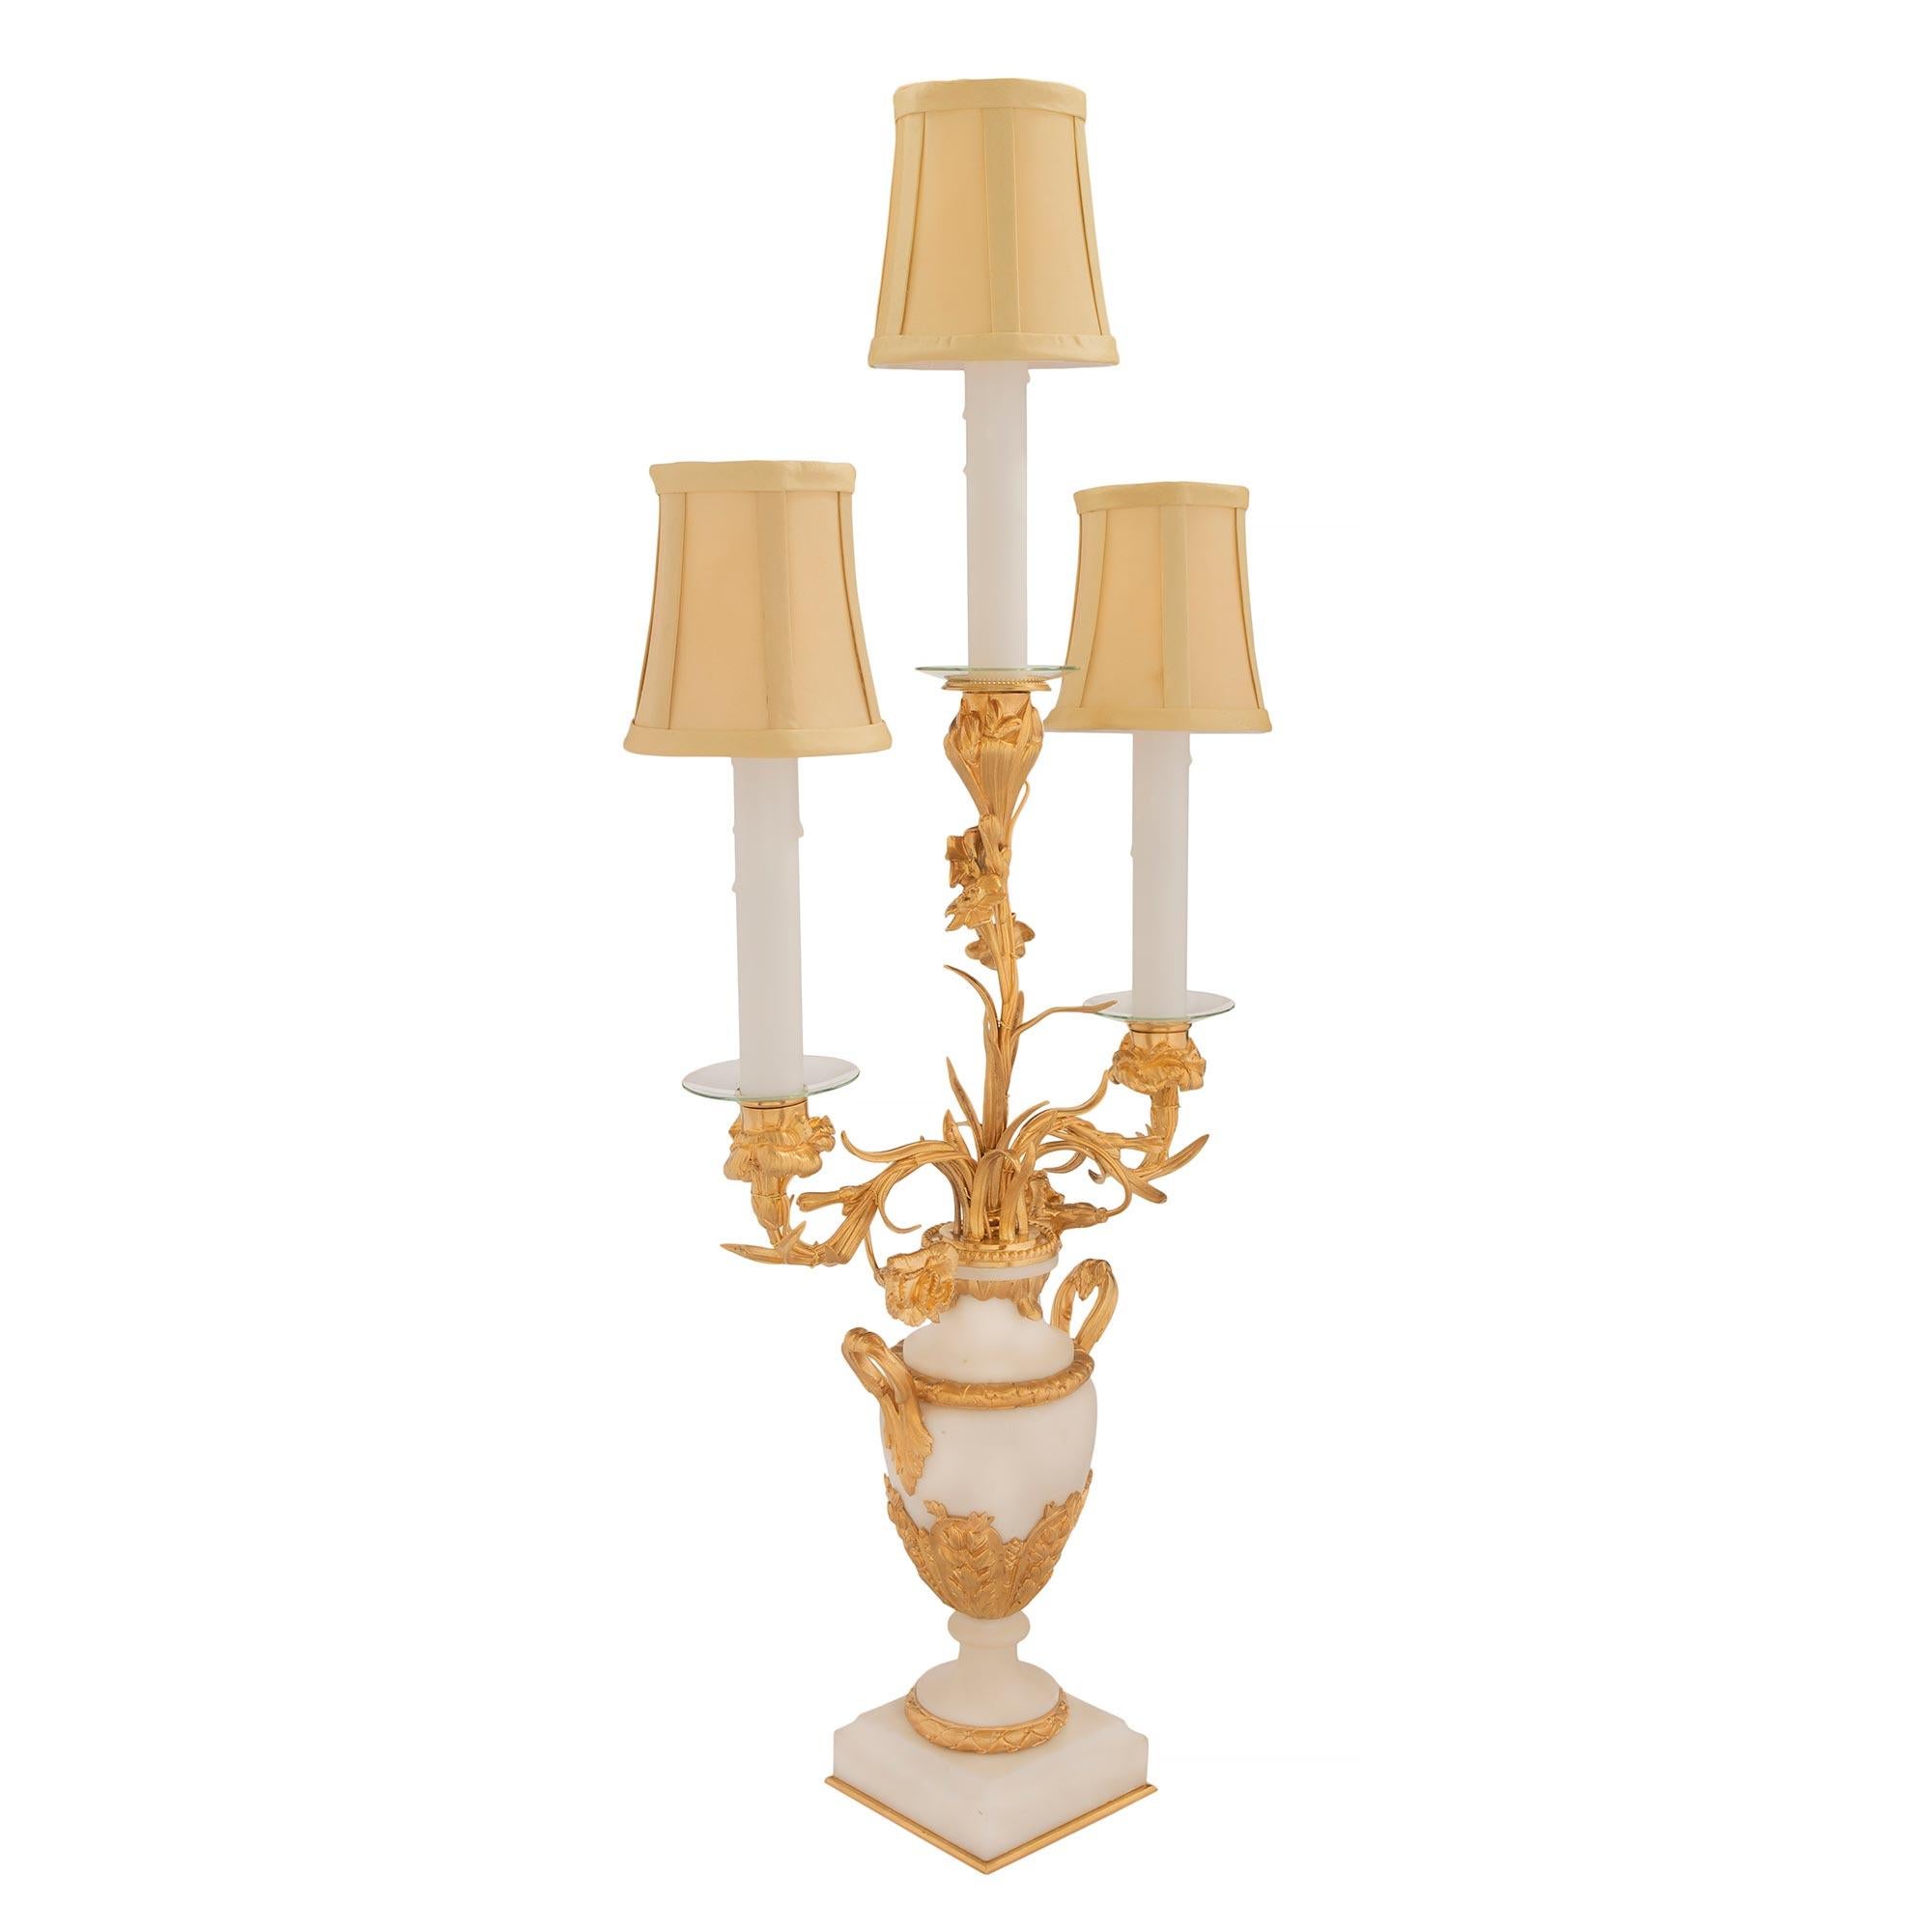 Une élégante paire de lampes candélabres à trois bras de style Louis XVI du 19ème siècle, en bronze doré et marbre blanc de Carrare. Chaque lampe est surélevée par de fins pieds à boule en bronze doré sous une base carrée en marbre blanc de Carrare